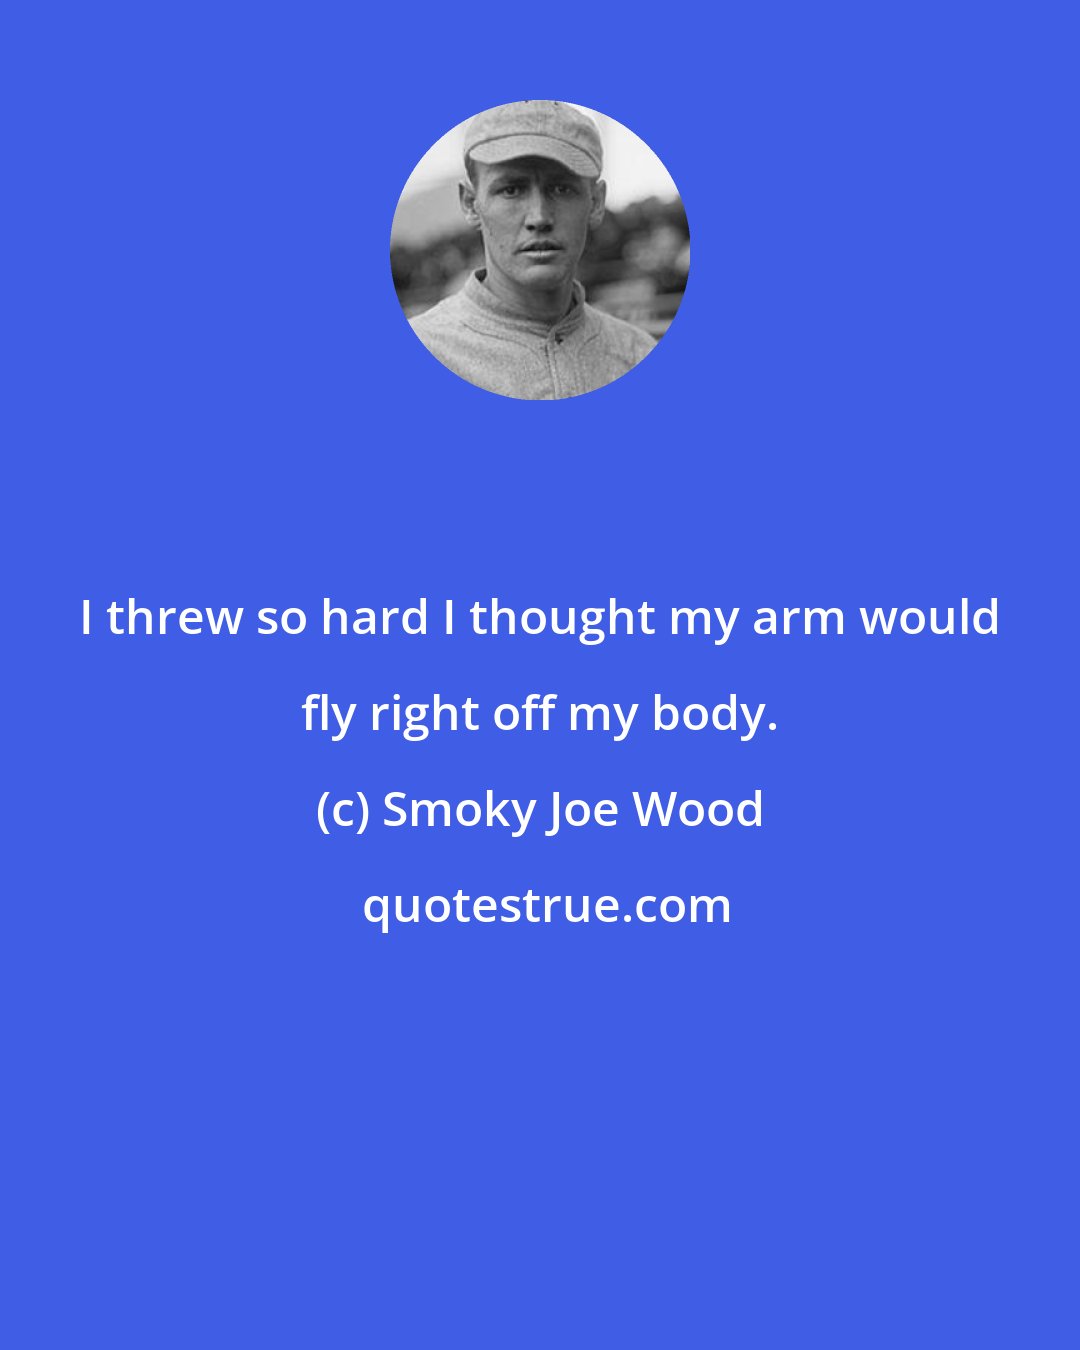 Smoky Joe Wood: I threw so hard I thought my arm would fly right off my body.